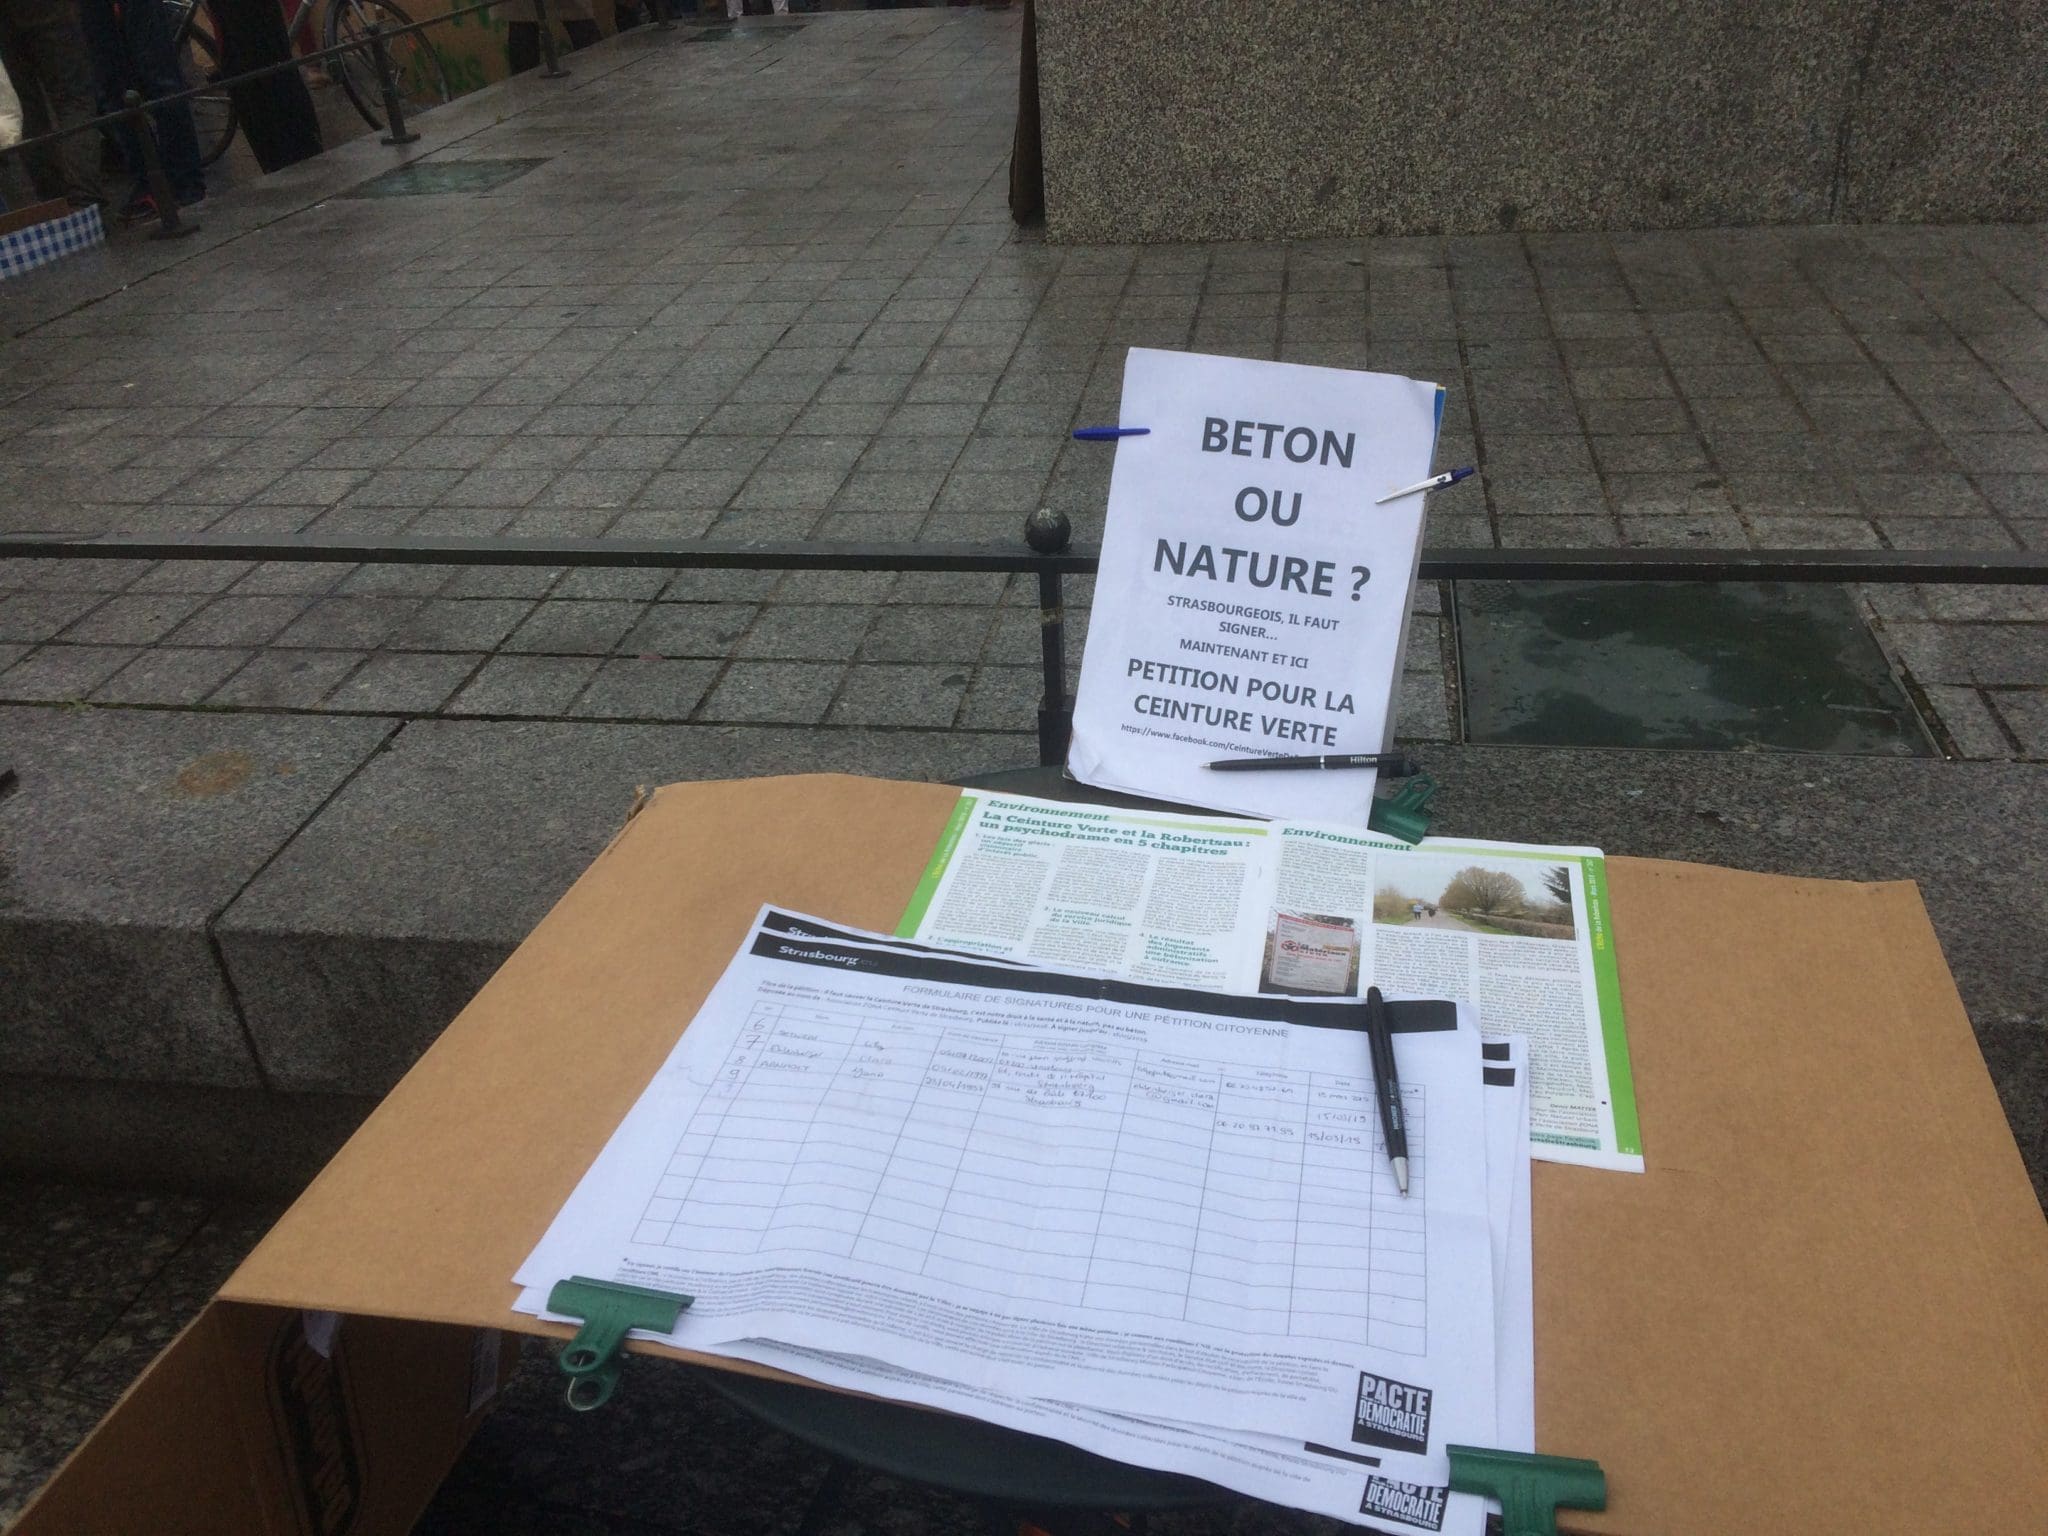 À l'occasion de la manifestation des lycéens pour le Climat, une pétition pour la ceinture verte avait été déposée (photo JFG / Rue89 Strasbourg)